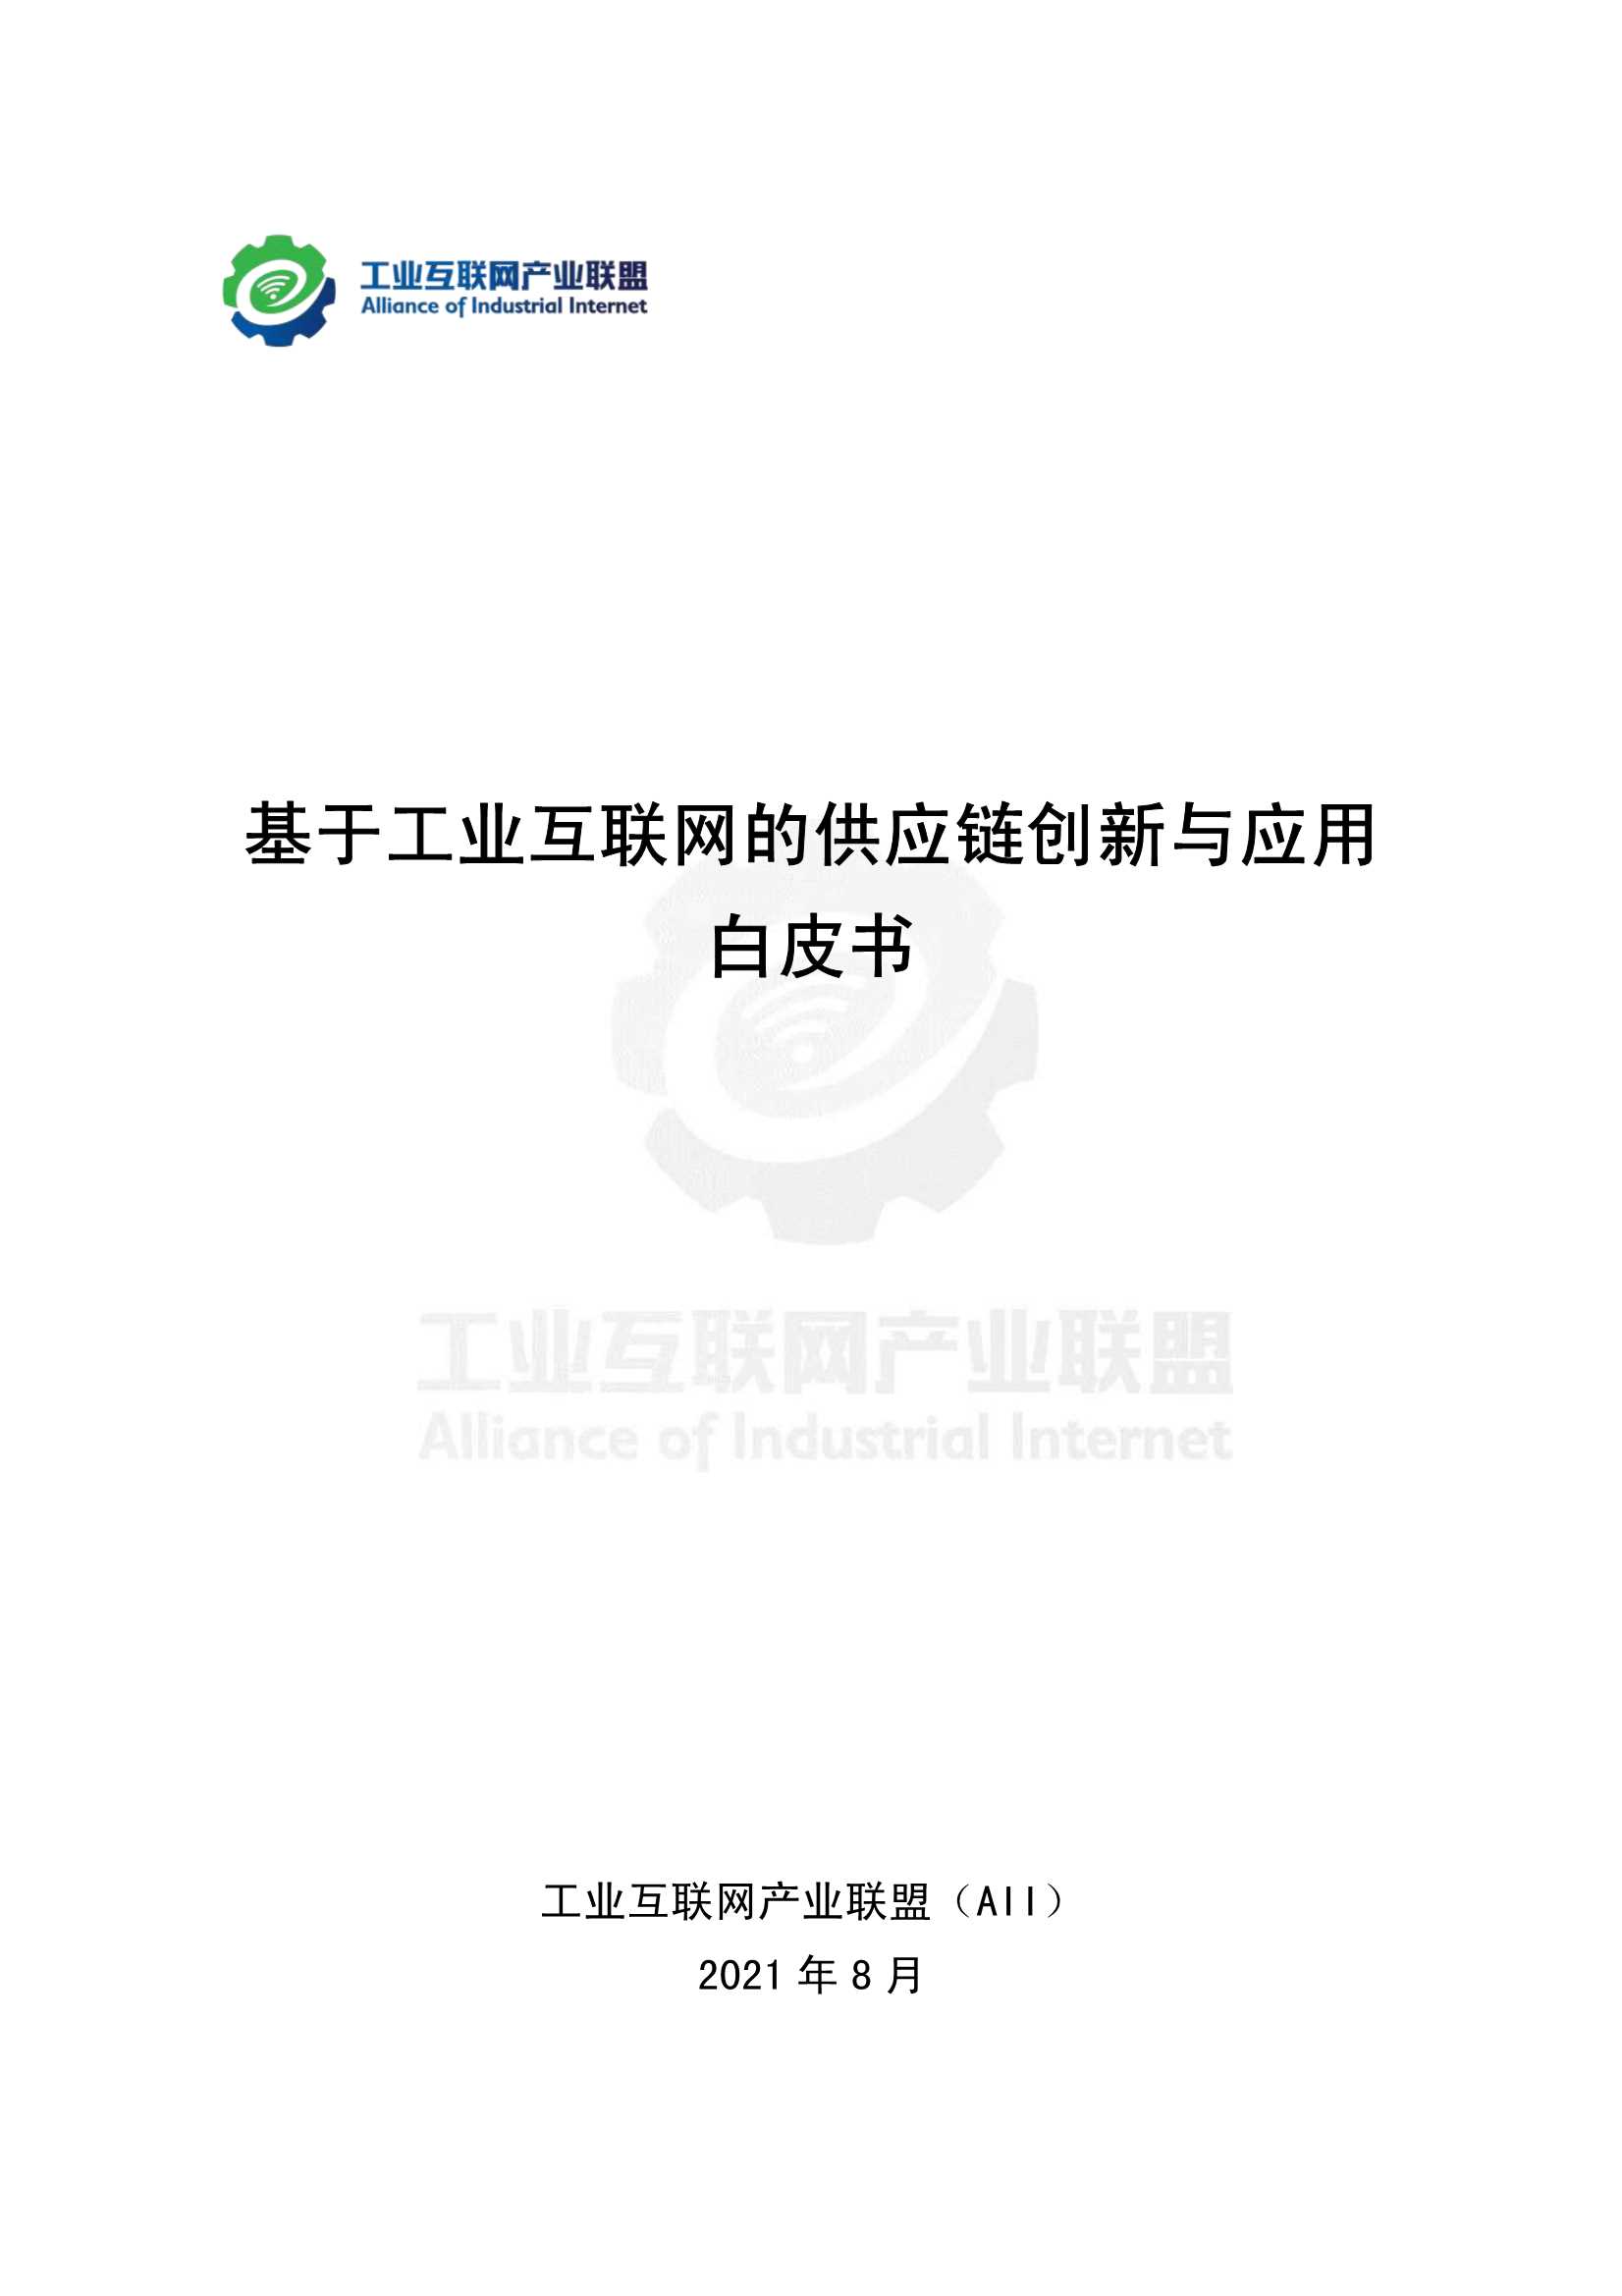 产业联盟-基于工业互联网的供应链创新与应用白皮书-2022.01-112页